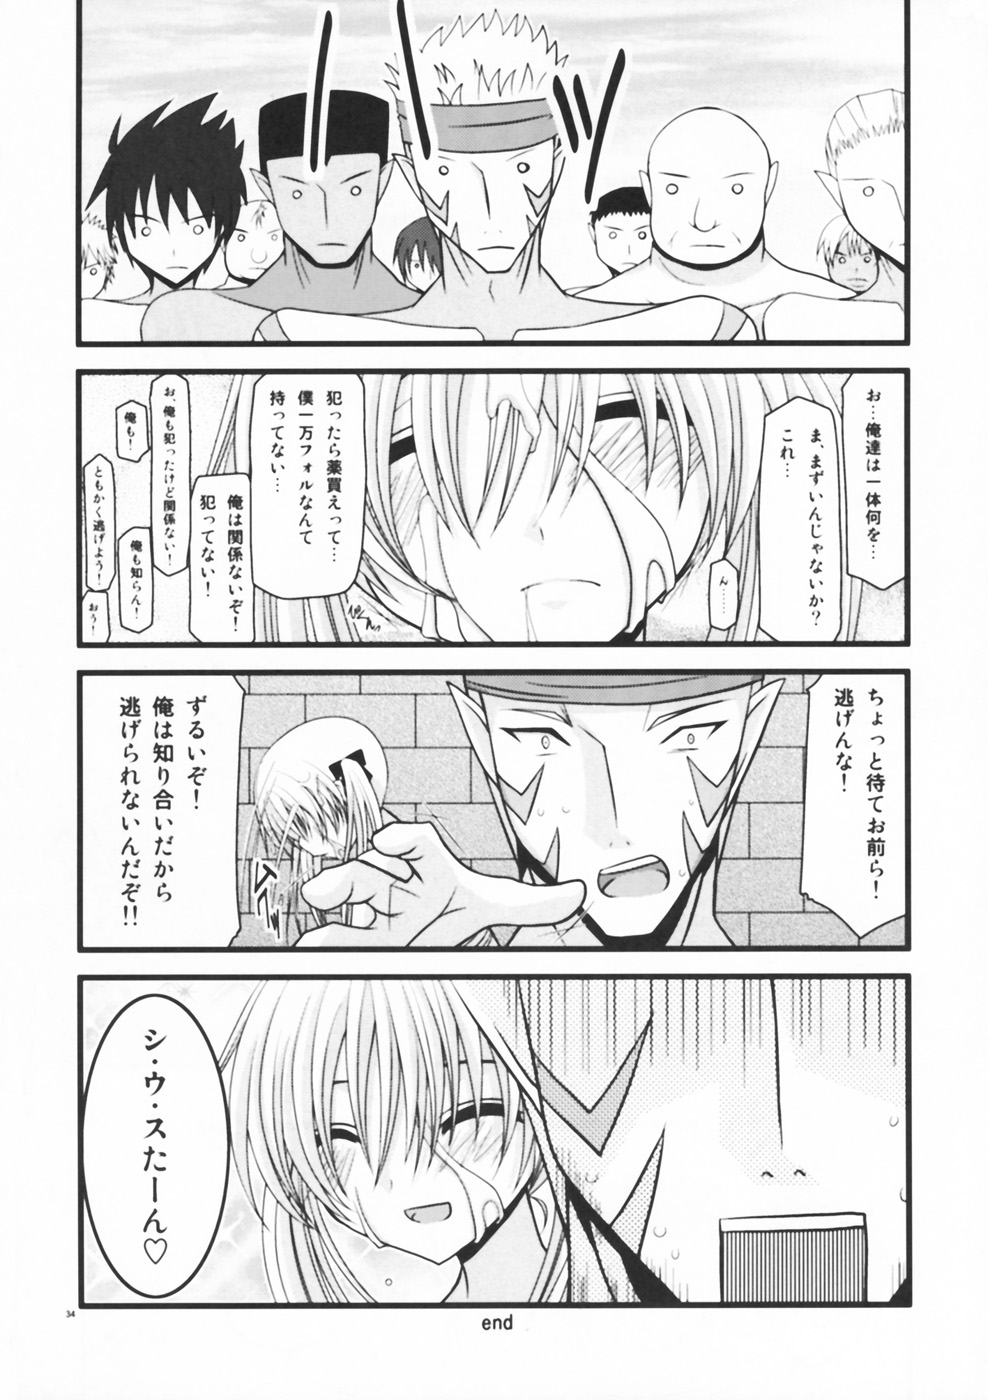 [valssu (Charu)] Horegusuri no Goshiyou wa Keikakuteki ni (Star Ocean: The Second Story) page 34 full